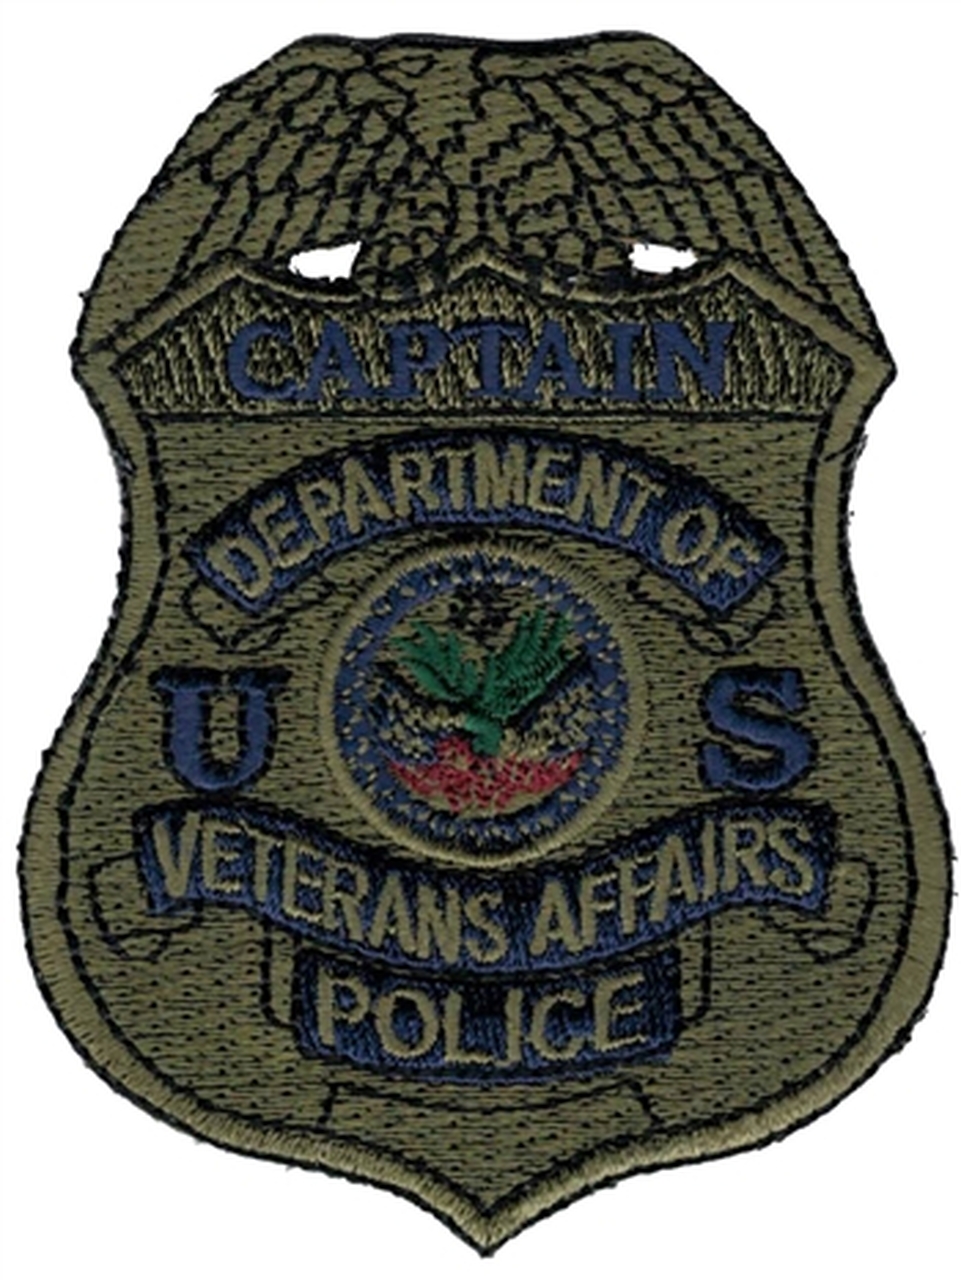 Detail Images Of Police Badges Nomer 48